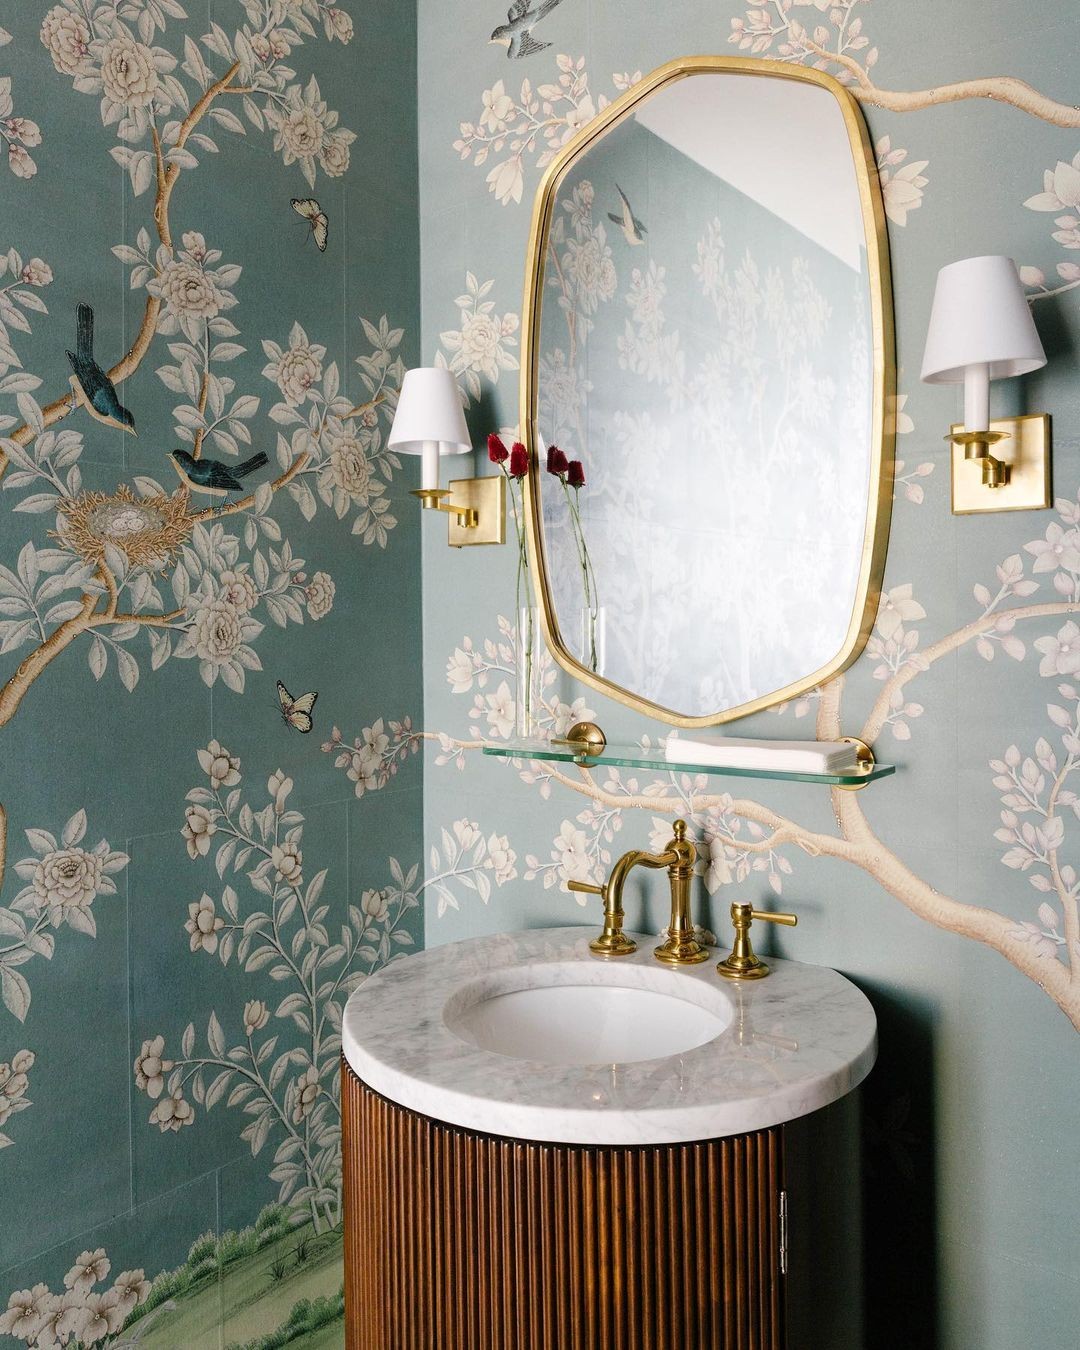 Décor do dia: lavabo com papel de parede floral e metais dourados (Foto: Divulgação)